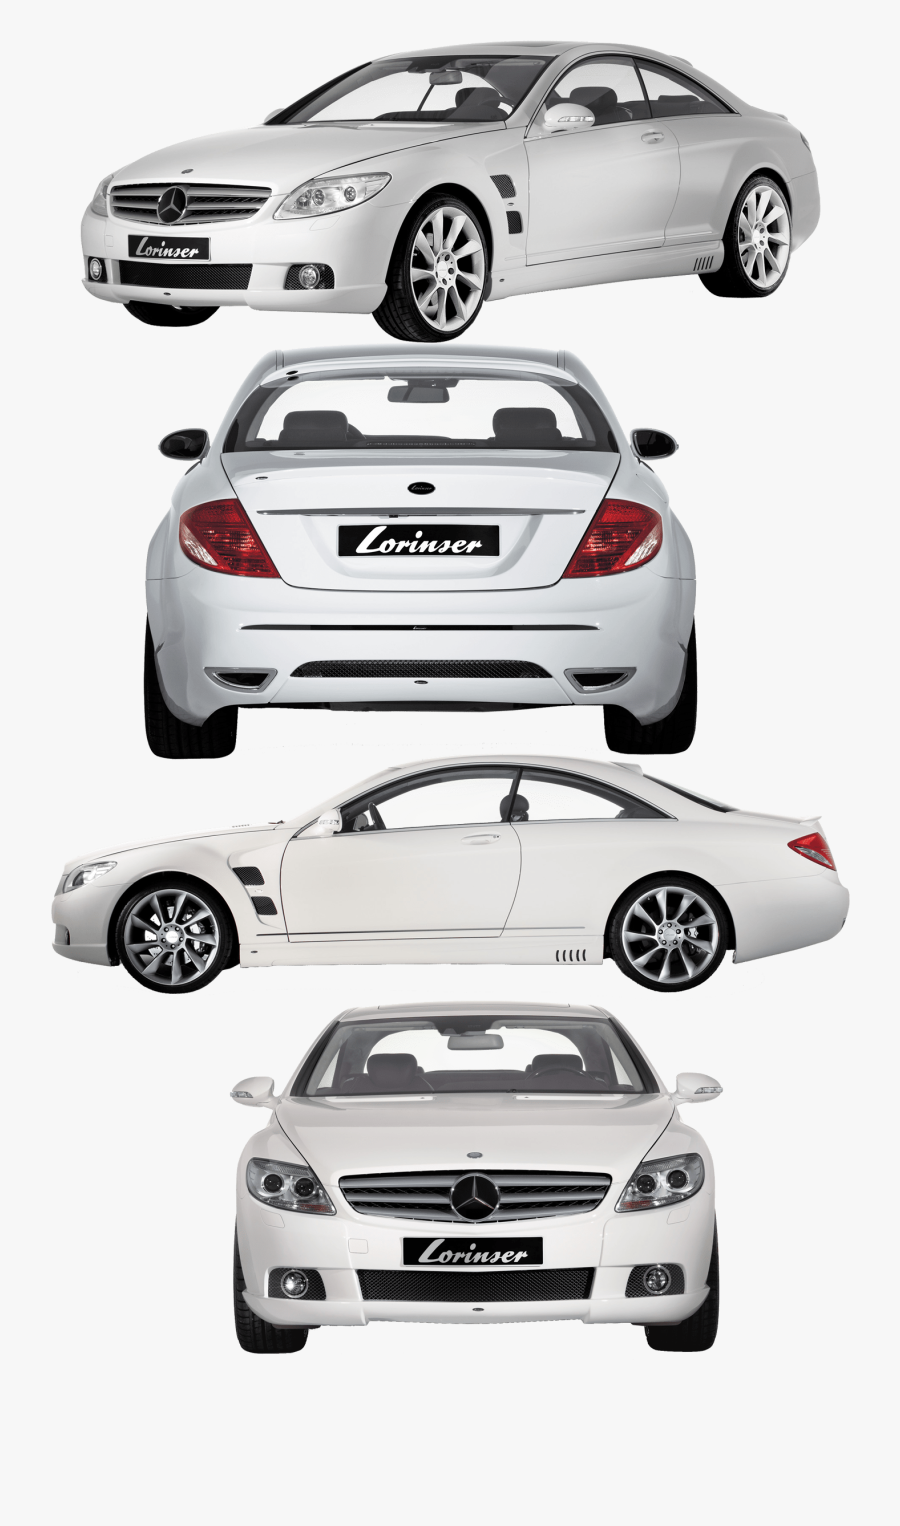 Executive Car - Png Image Of Car, Transparent Clipart